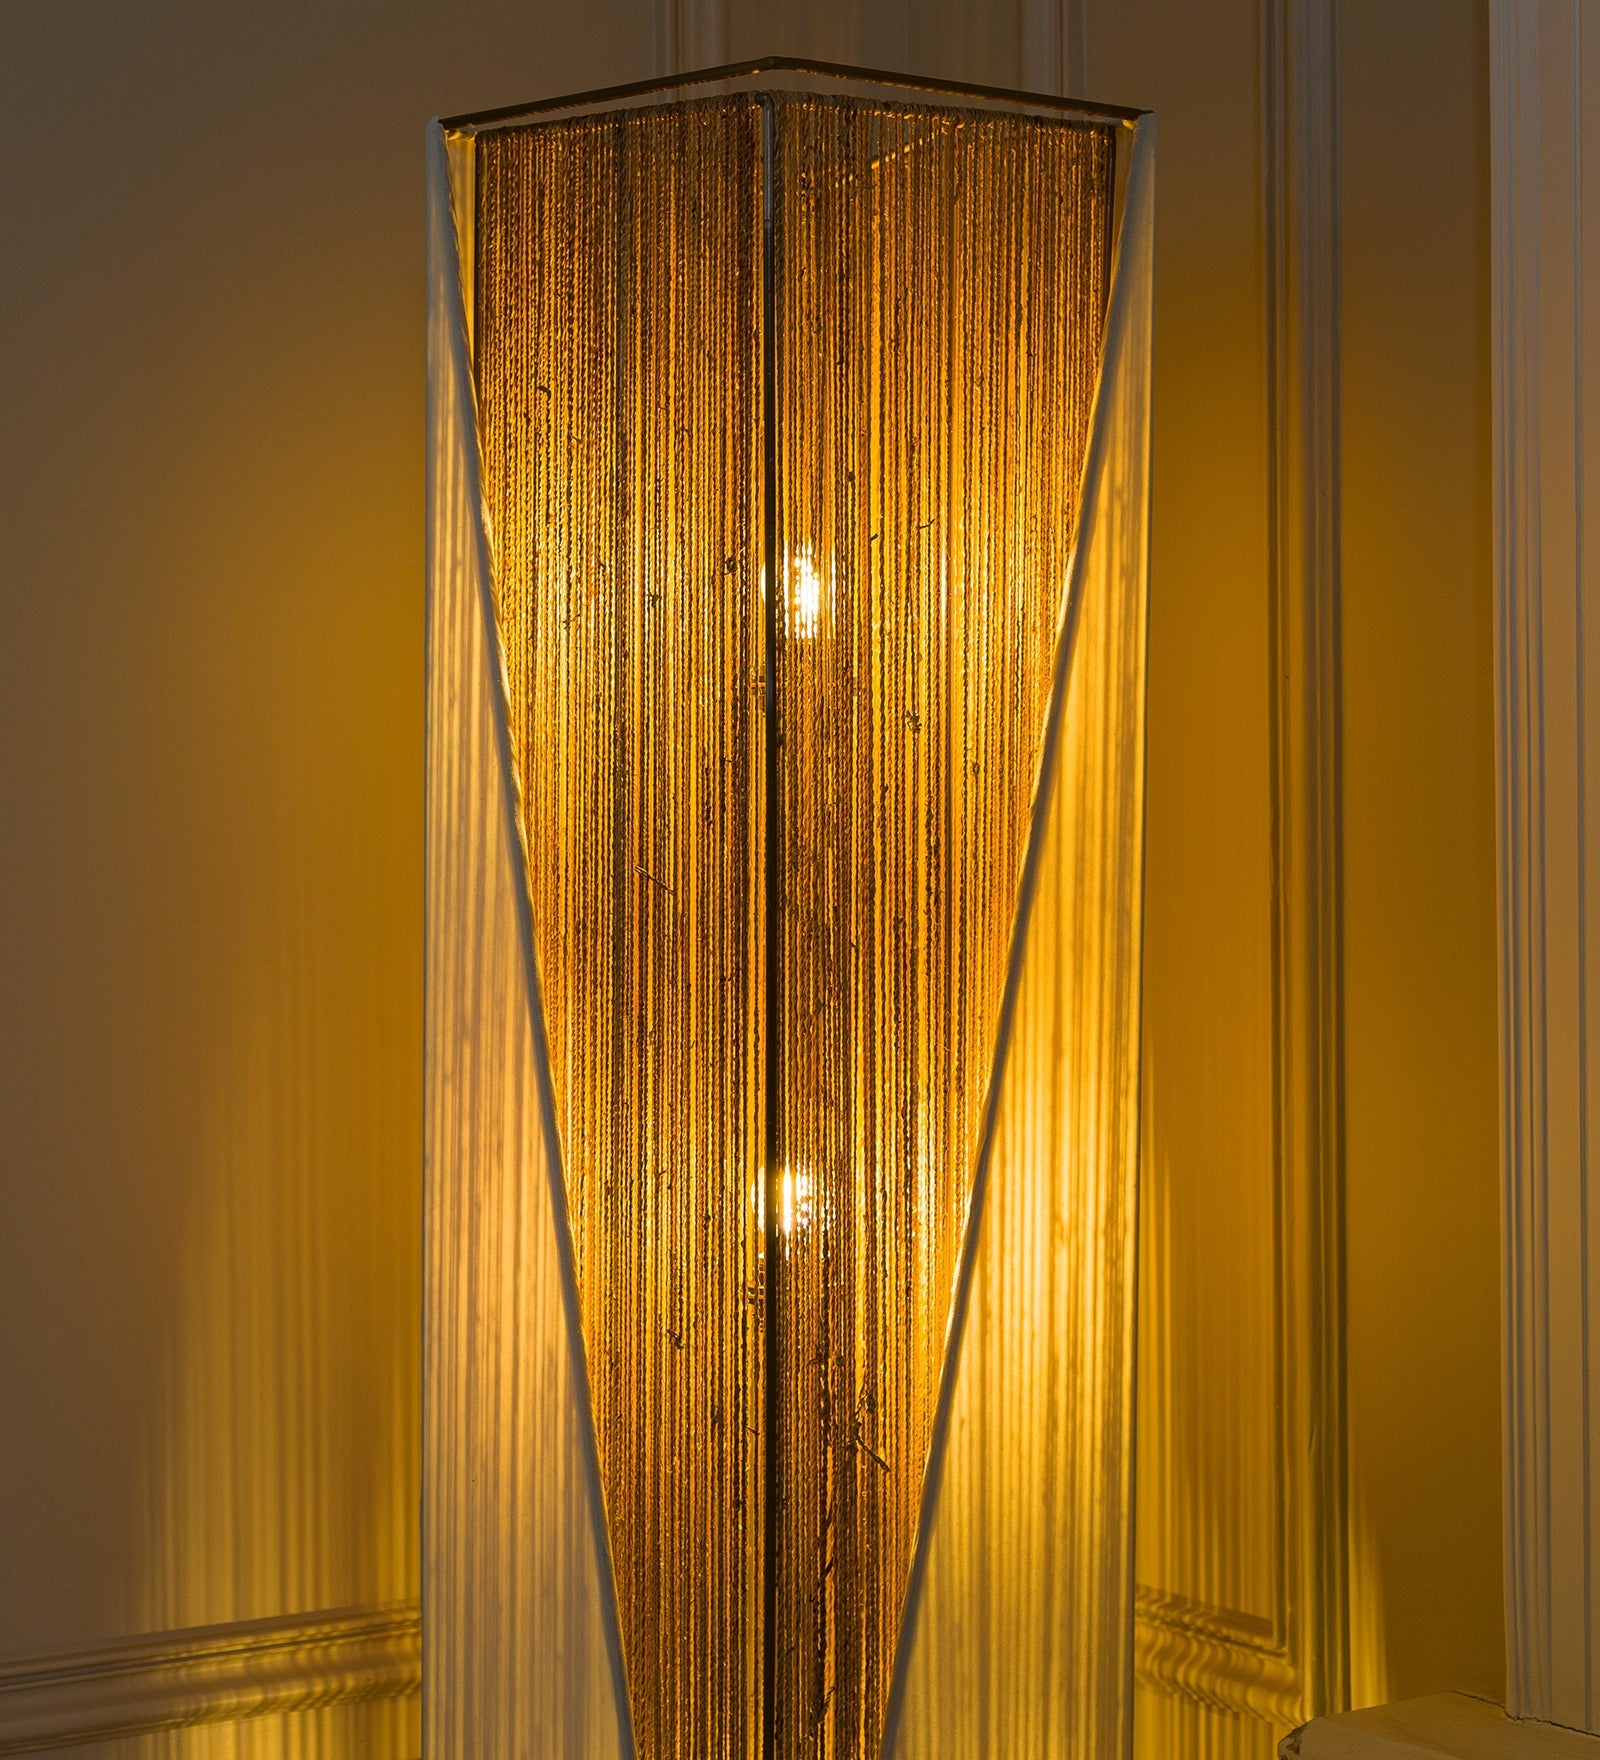 Reed Floor Lamp